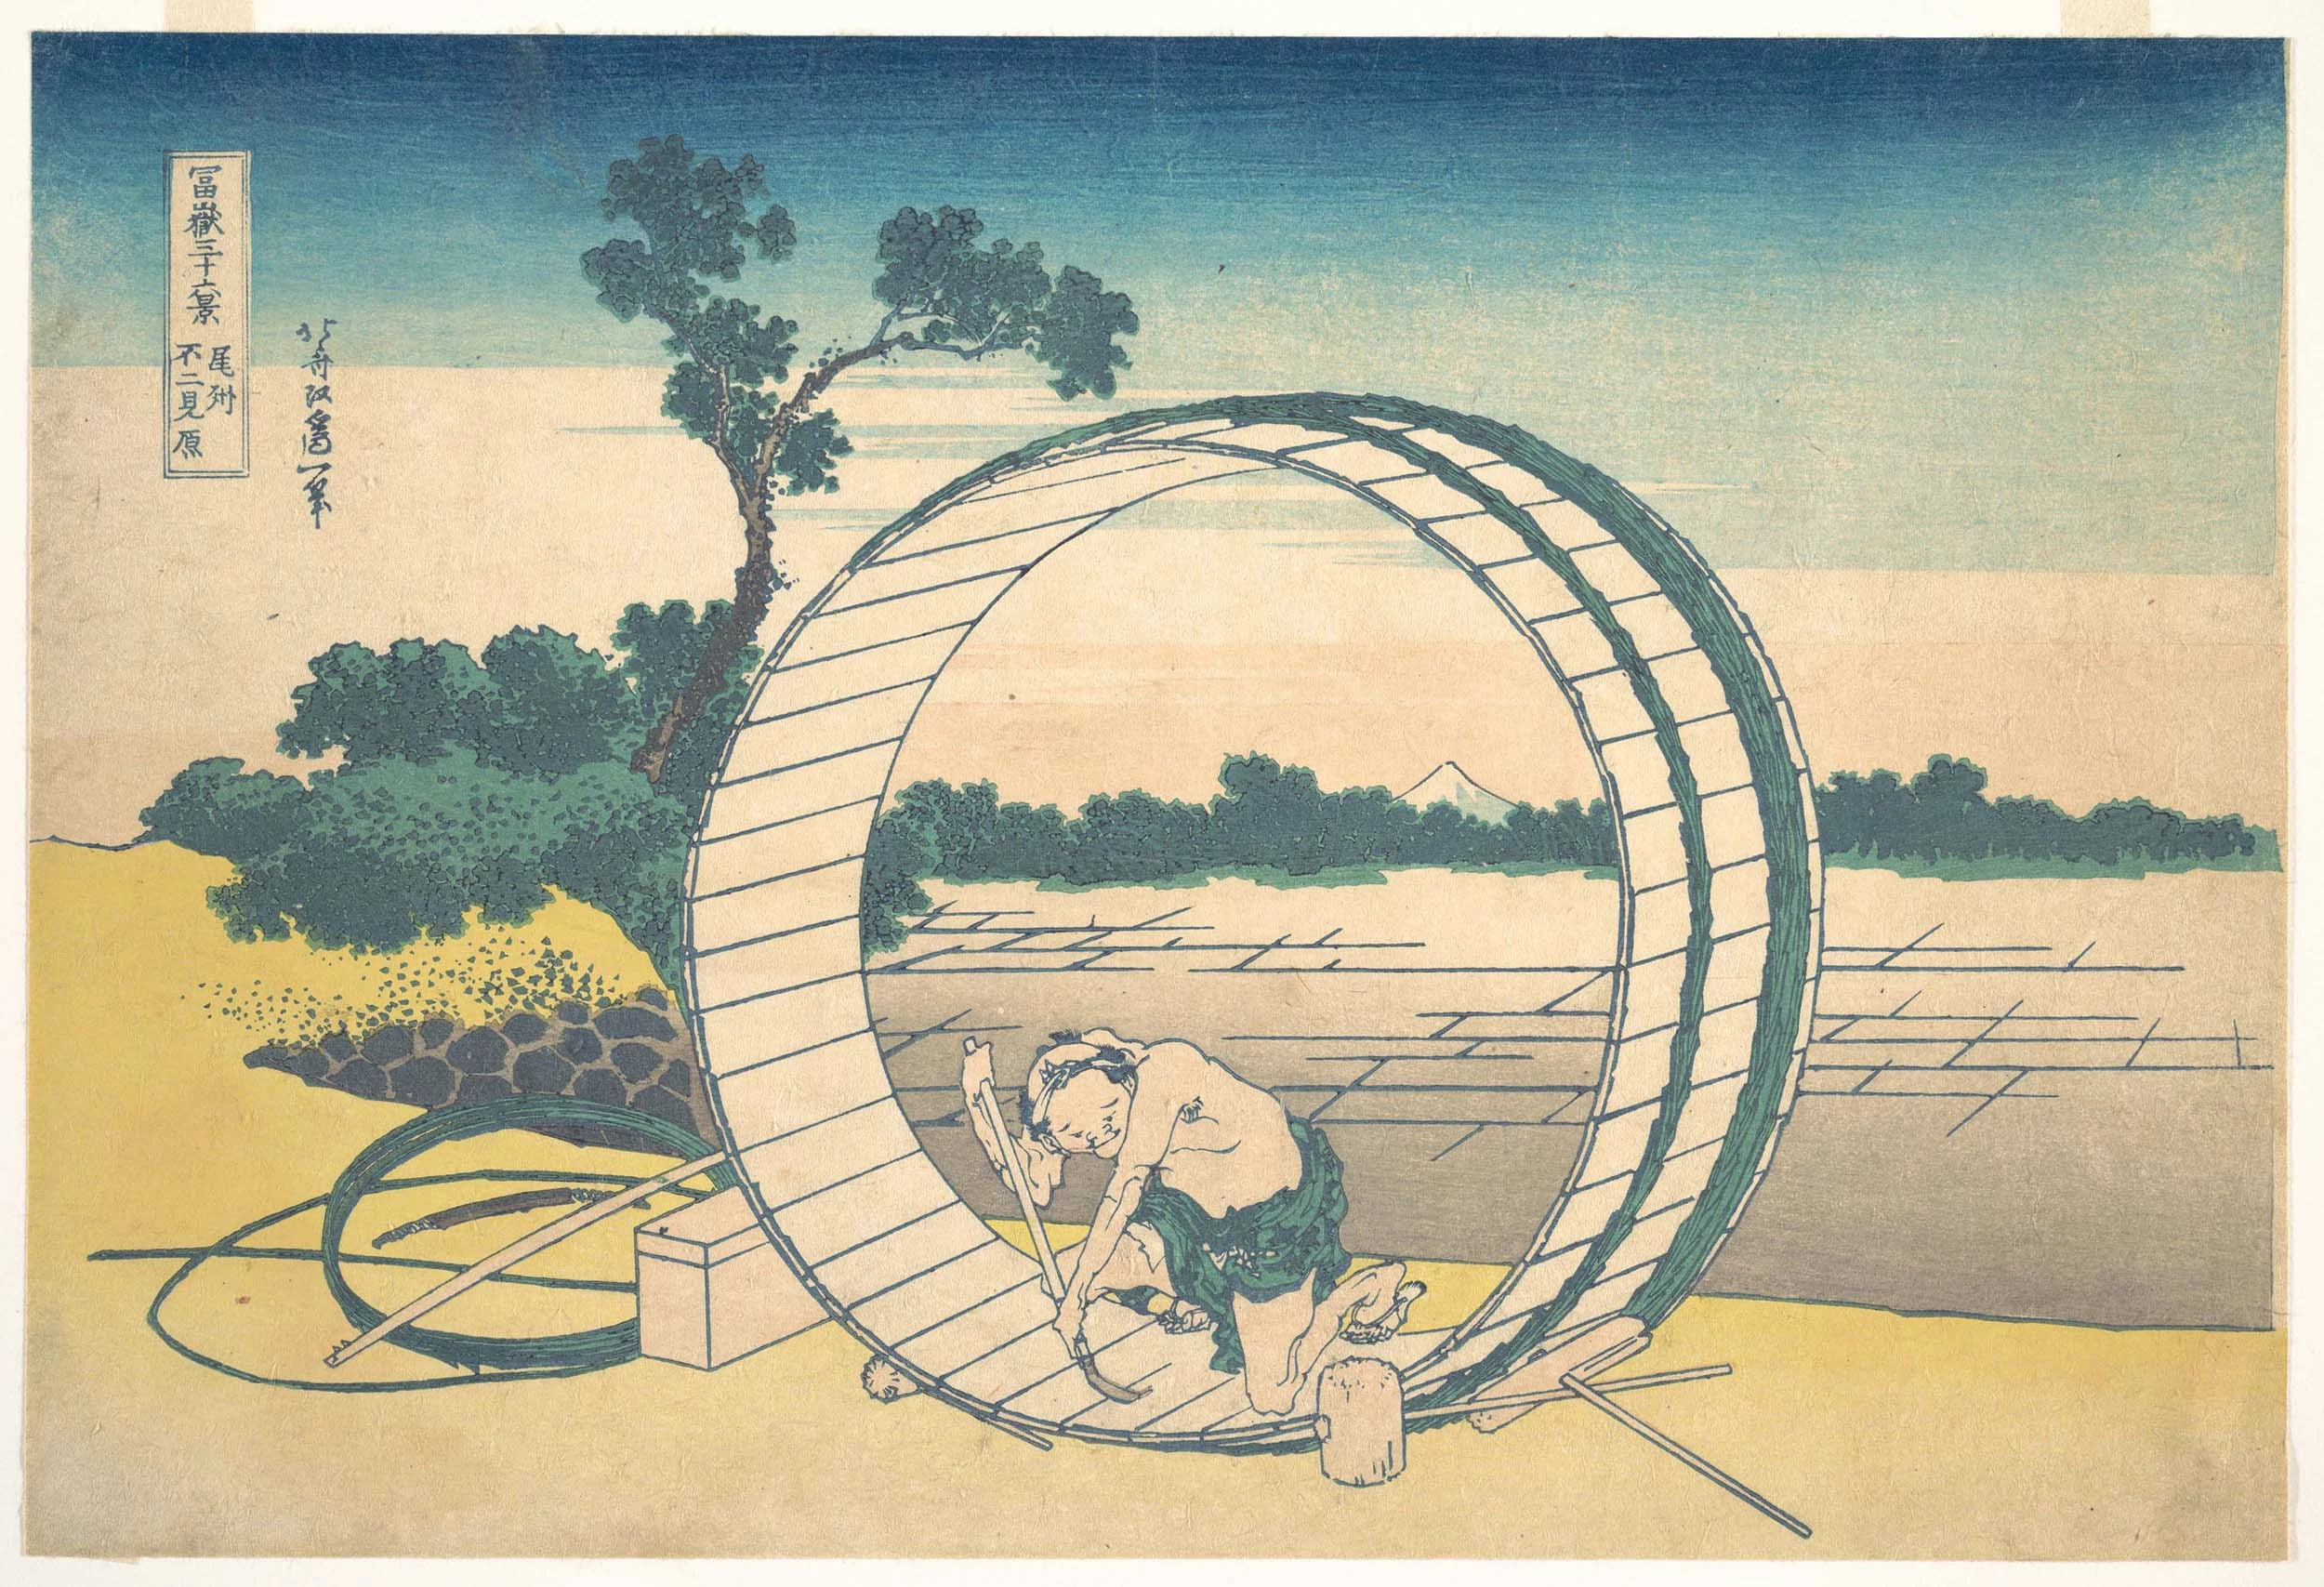 Fujimigahara in Owari Province, Katsushika Hokusai